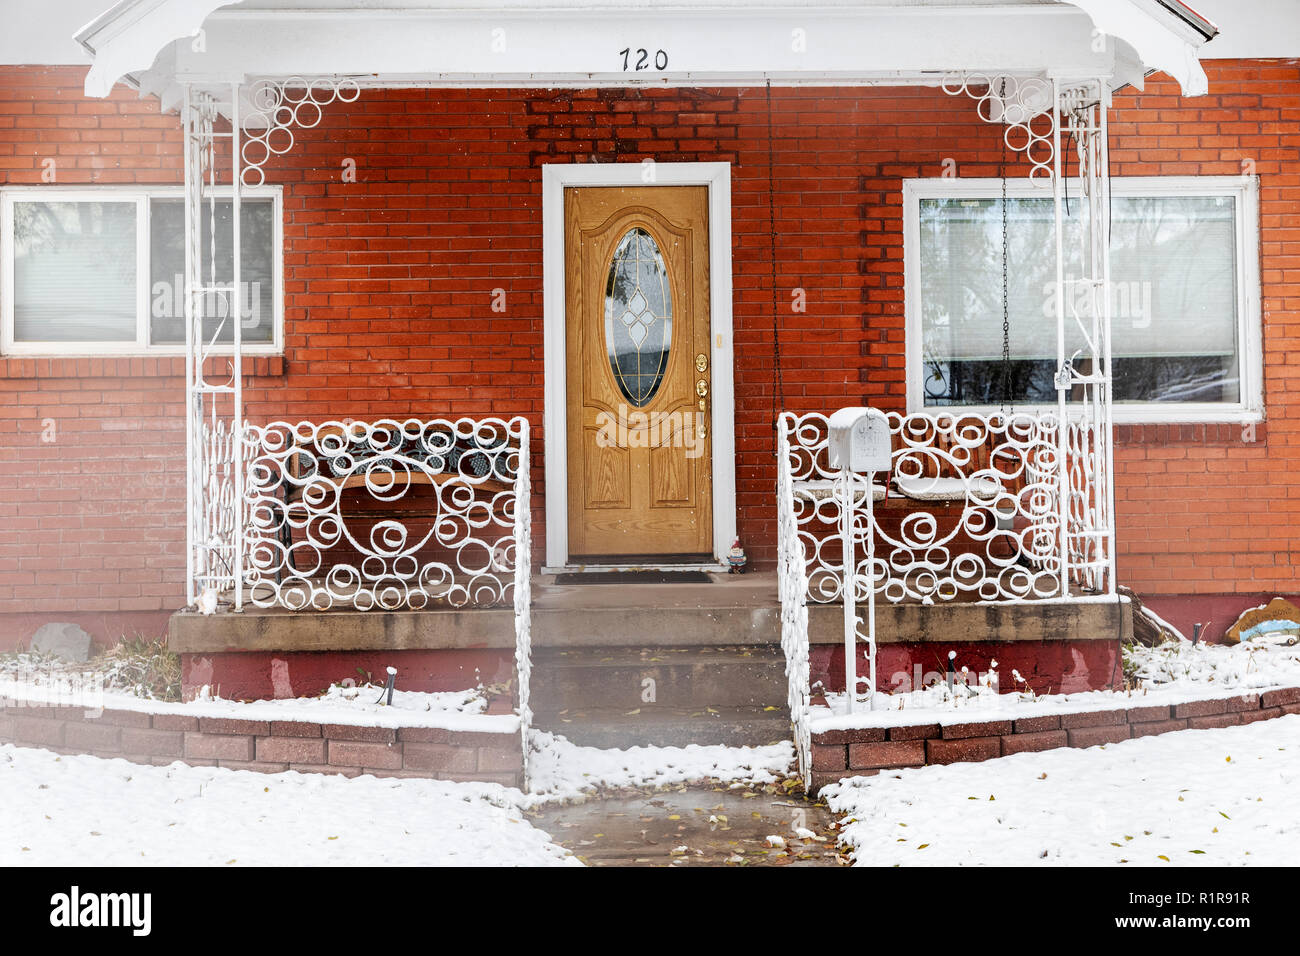 Couvert de neige ; clôture décorative en fer forgé 720 F Street, Salida ; Colorado ; USA Banque D'Images